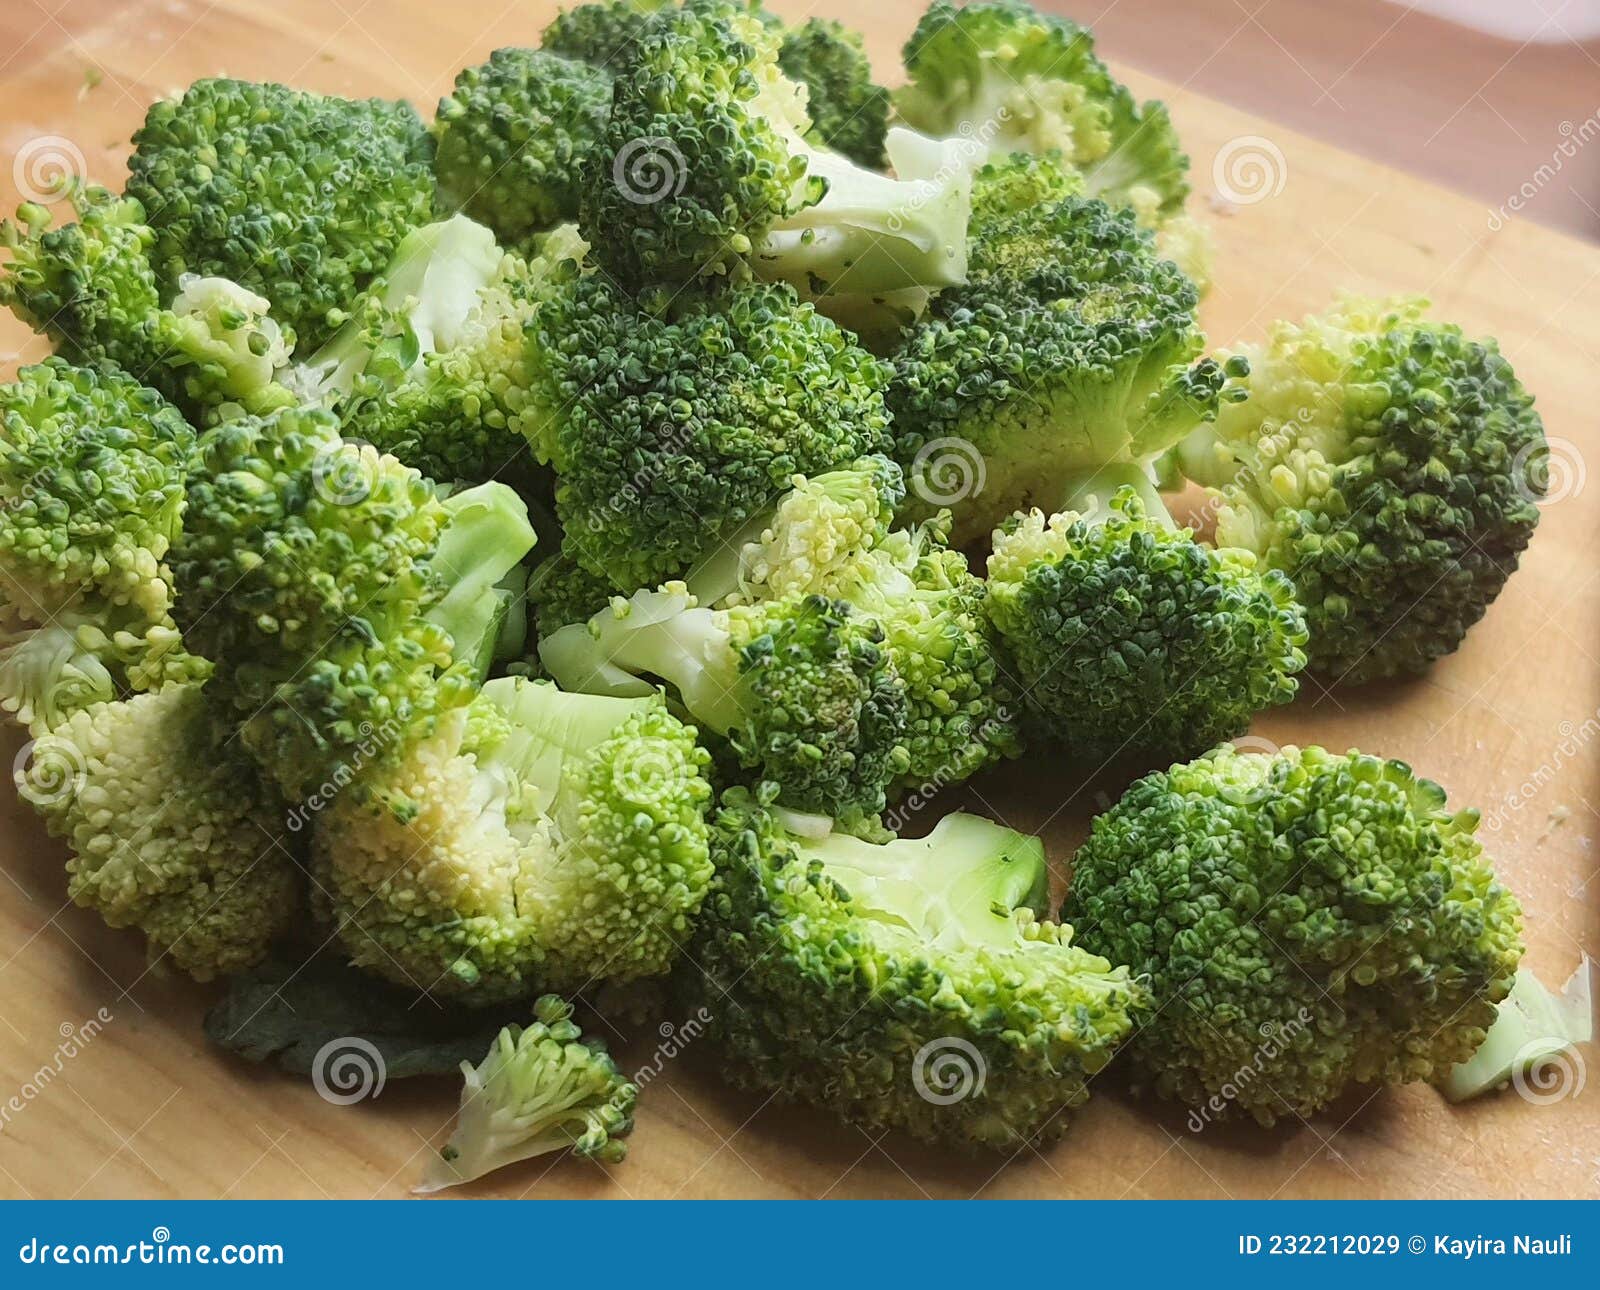 irisan brokoli organik di atas talenan kayu.